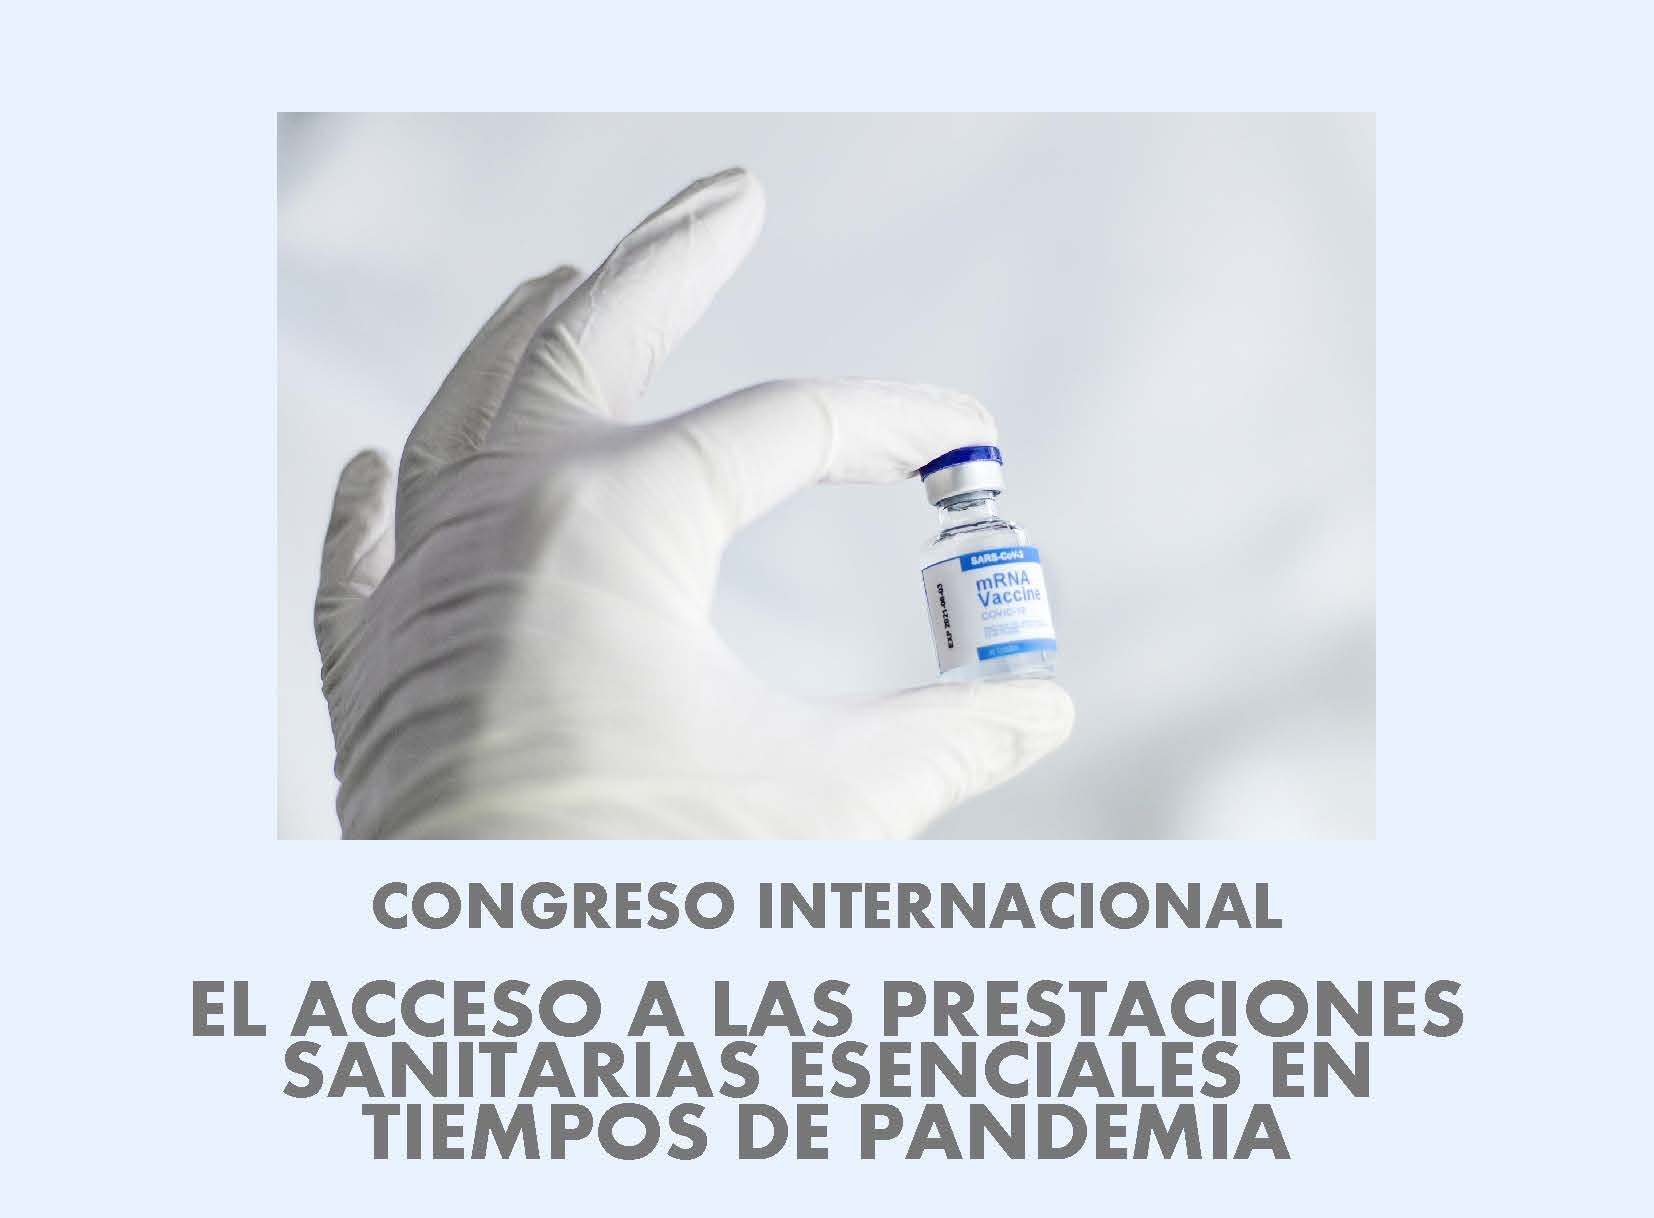  Congreso Internacional "El acceso a las prestaciones sanitarias esenciales en tiempos de pandemia"